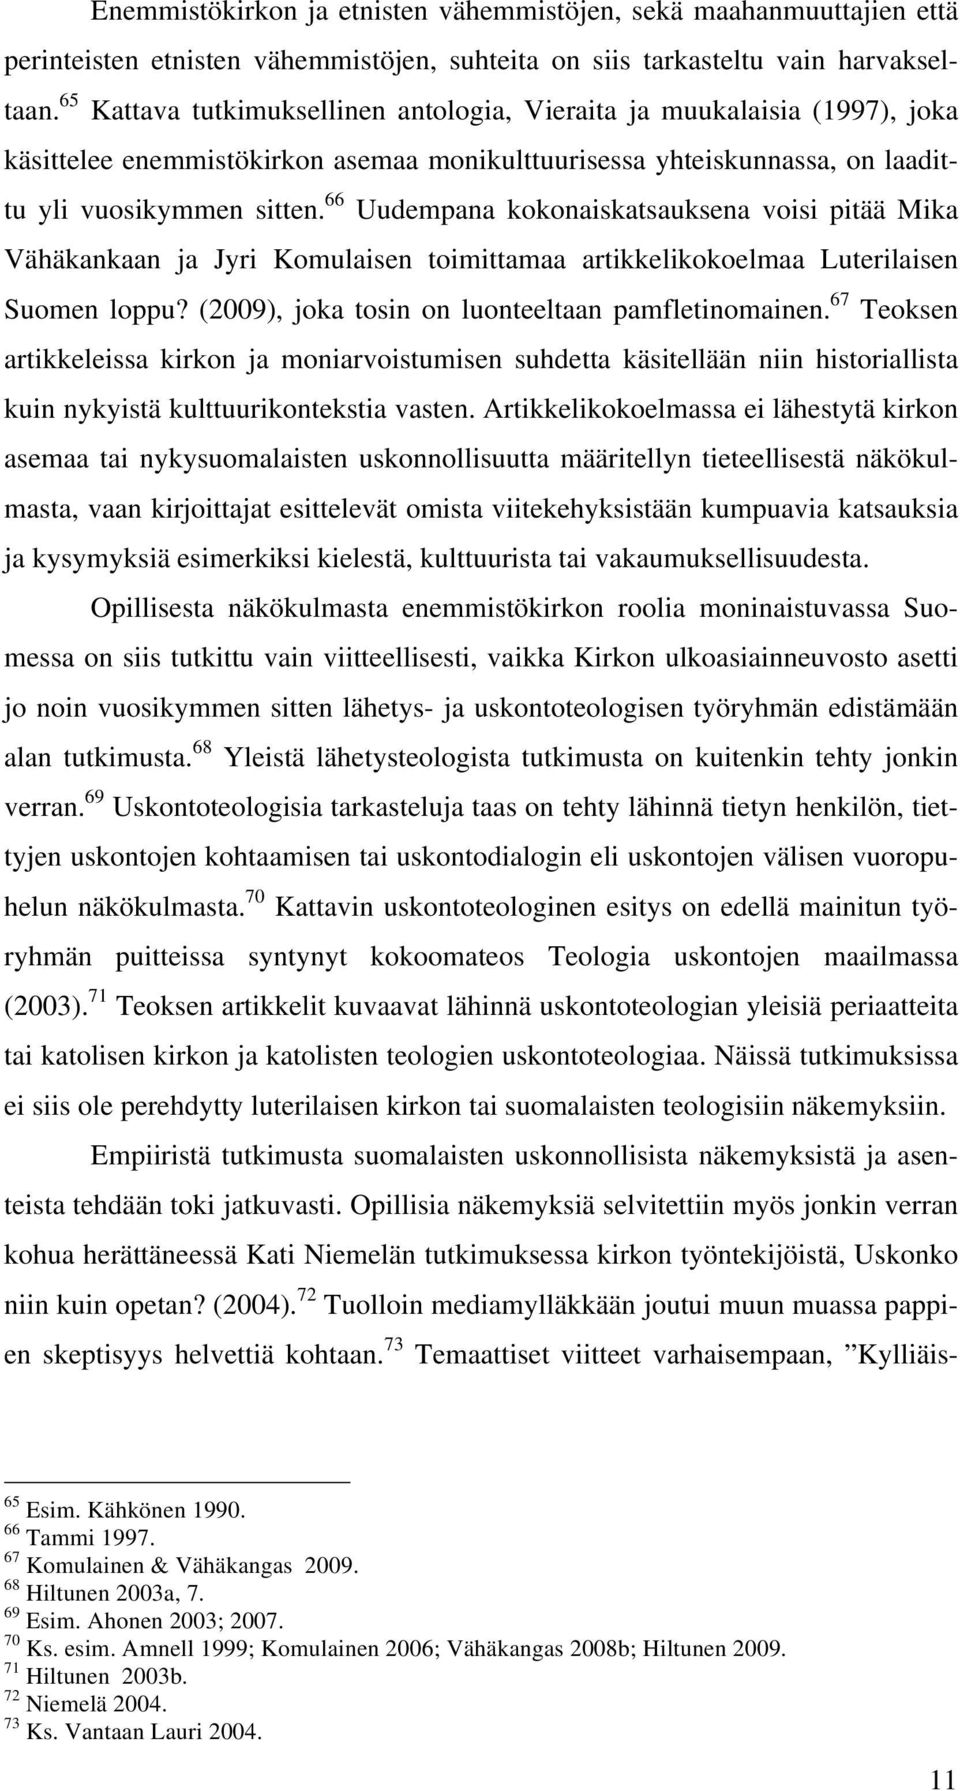 66 Uudempana kokonaiskatsauksena voisi pitää Mika Vähäkankaan ja Jyri Komulaisen toimittamaa artikkelikokoelmaa Luterilaisen Suomen loppu? (2009), joka tosin on luonteeltaan pamfletinomainen.